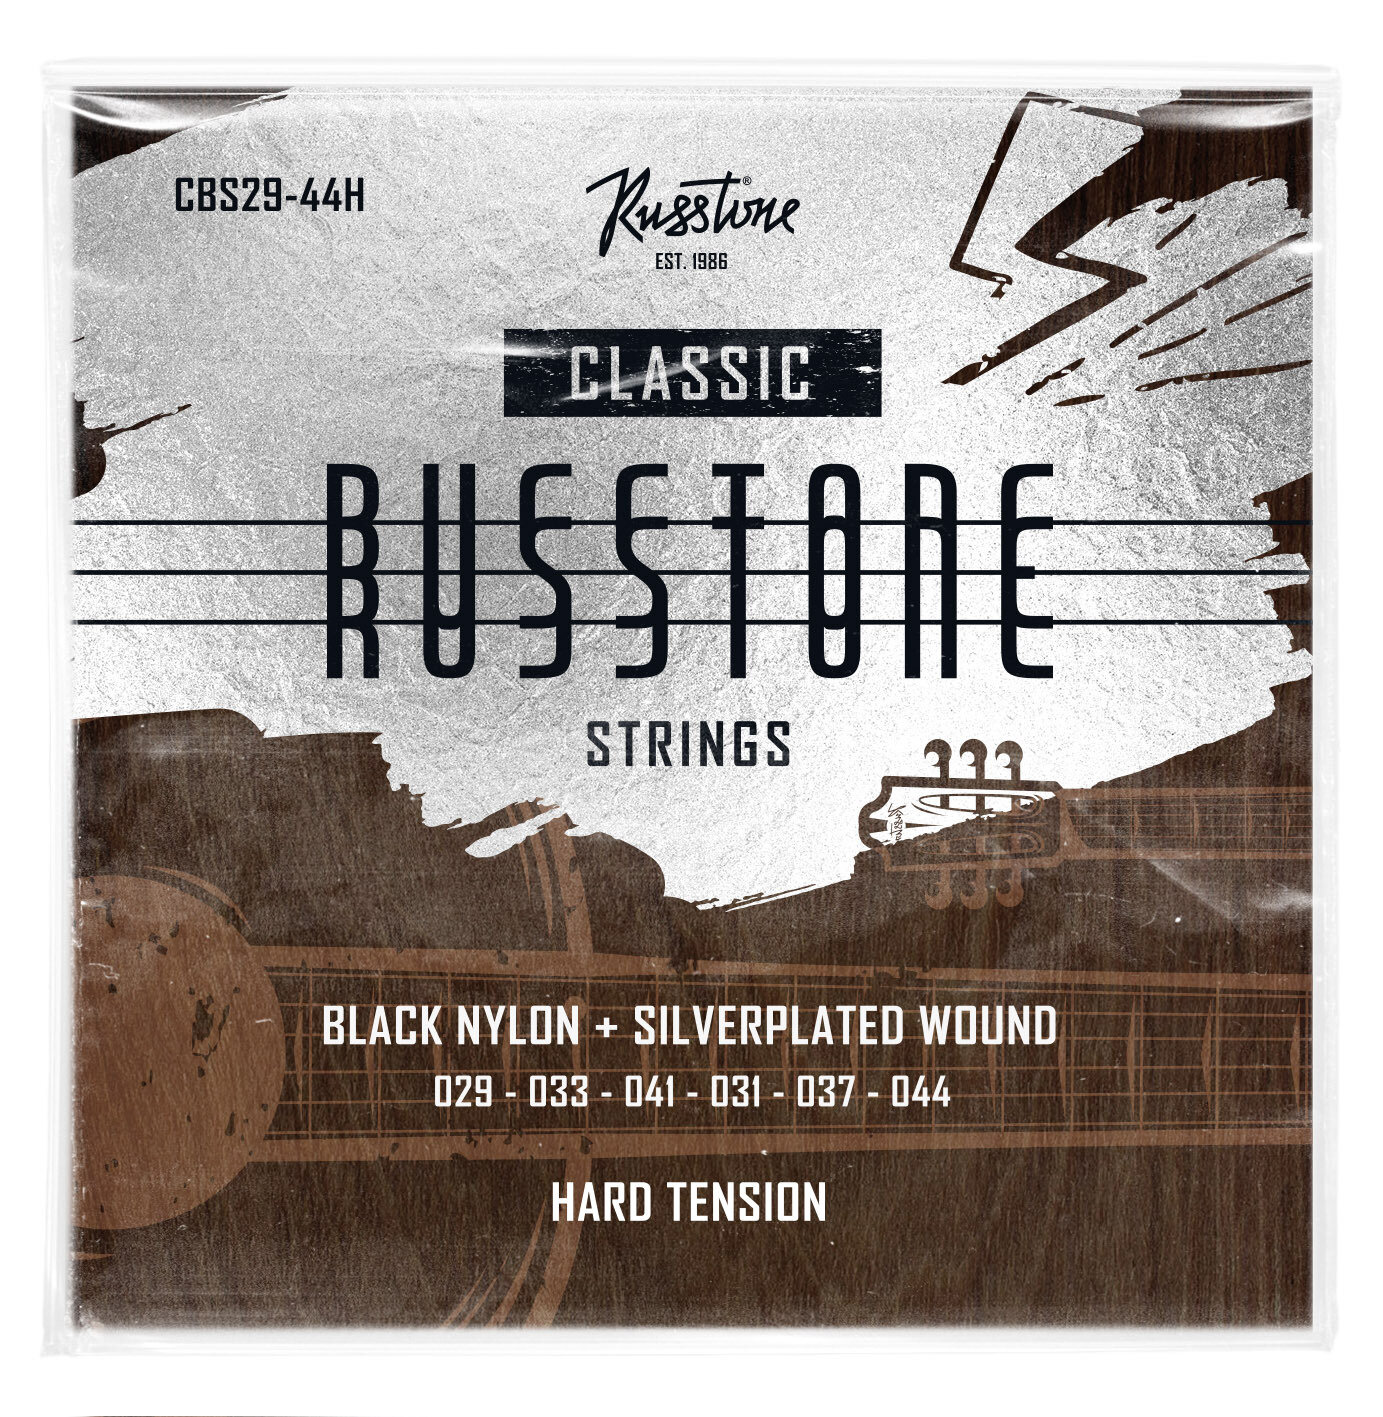 Струны для классической гитары Russtone CBS29-44H, Серия: Black Nylon, Обмотка: посеребрёная, Натяжение: сильное, Калибр: 29-33-41-31-37-44.